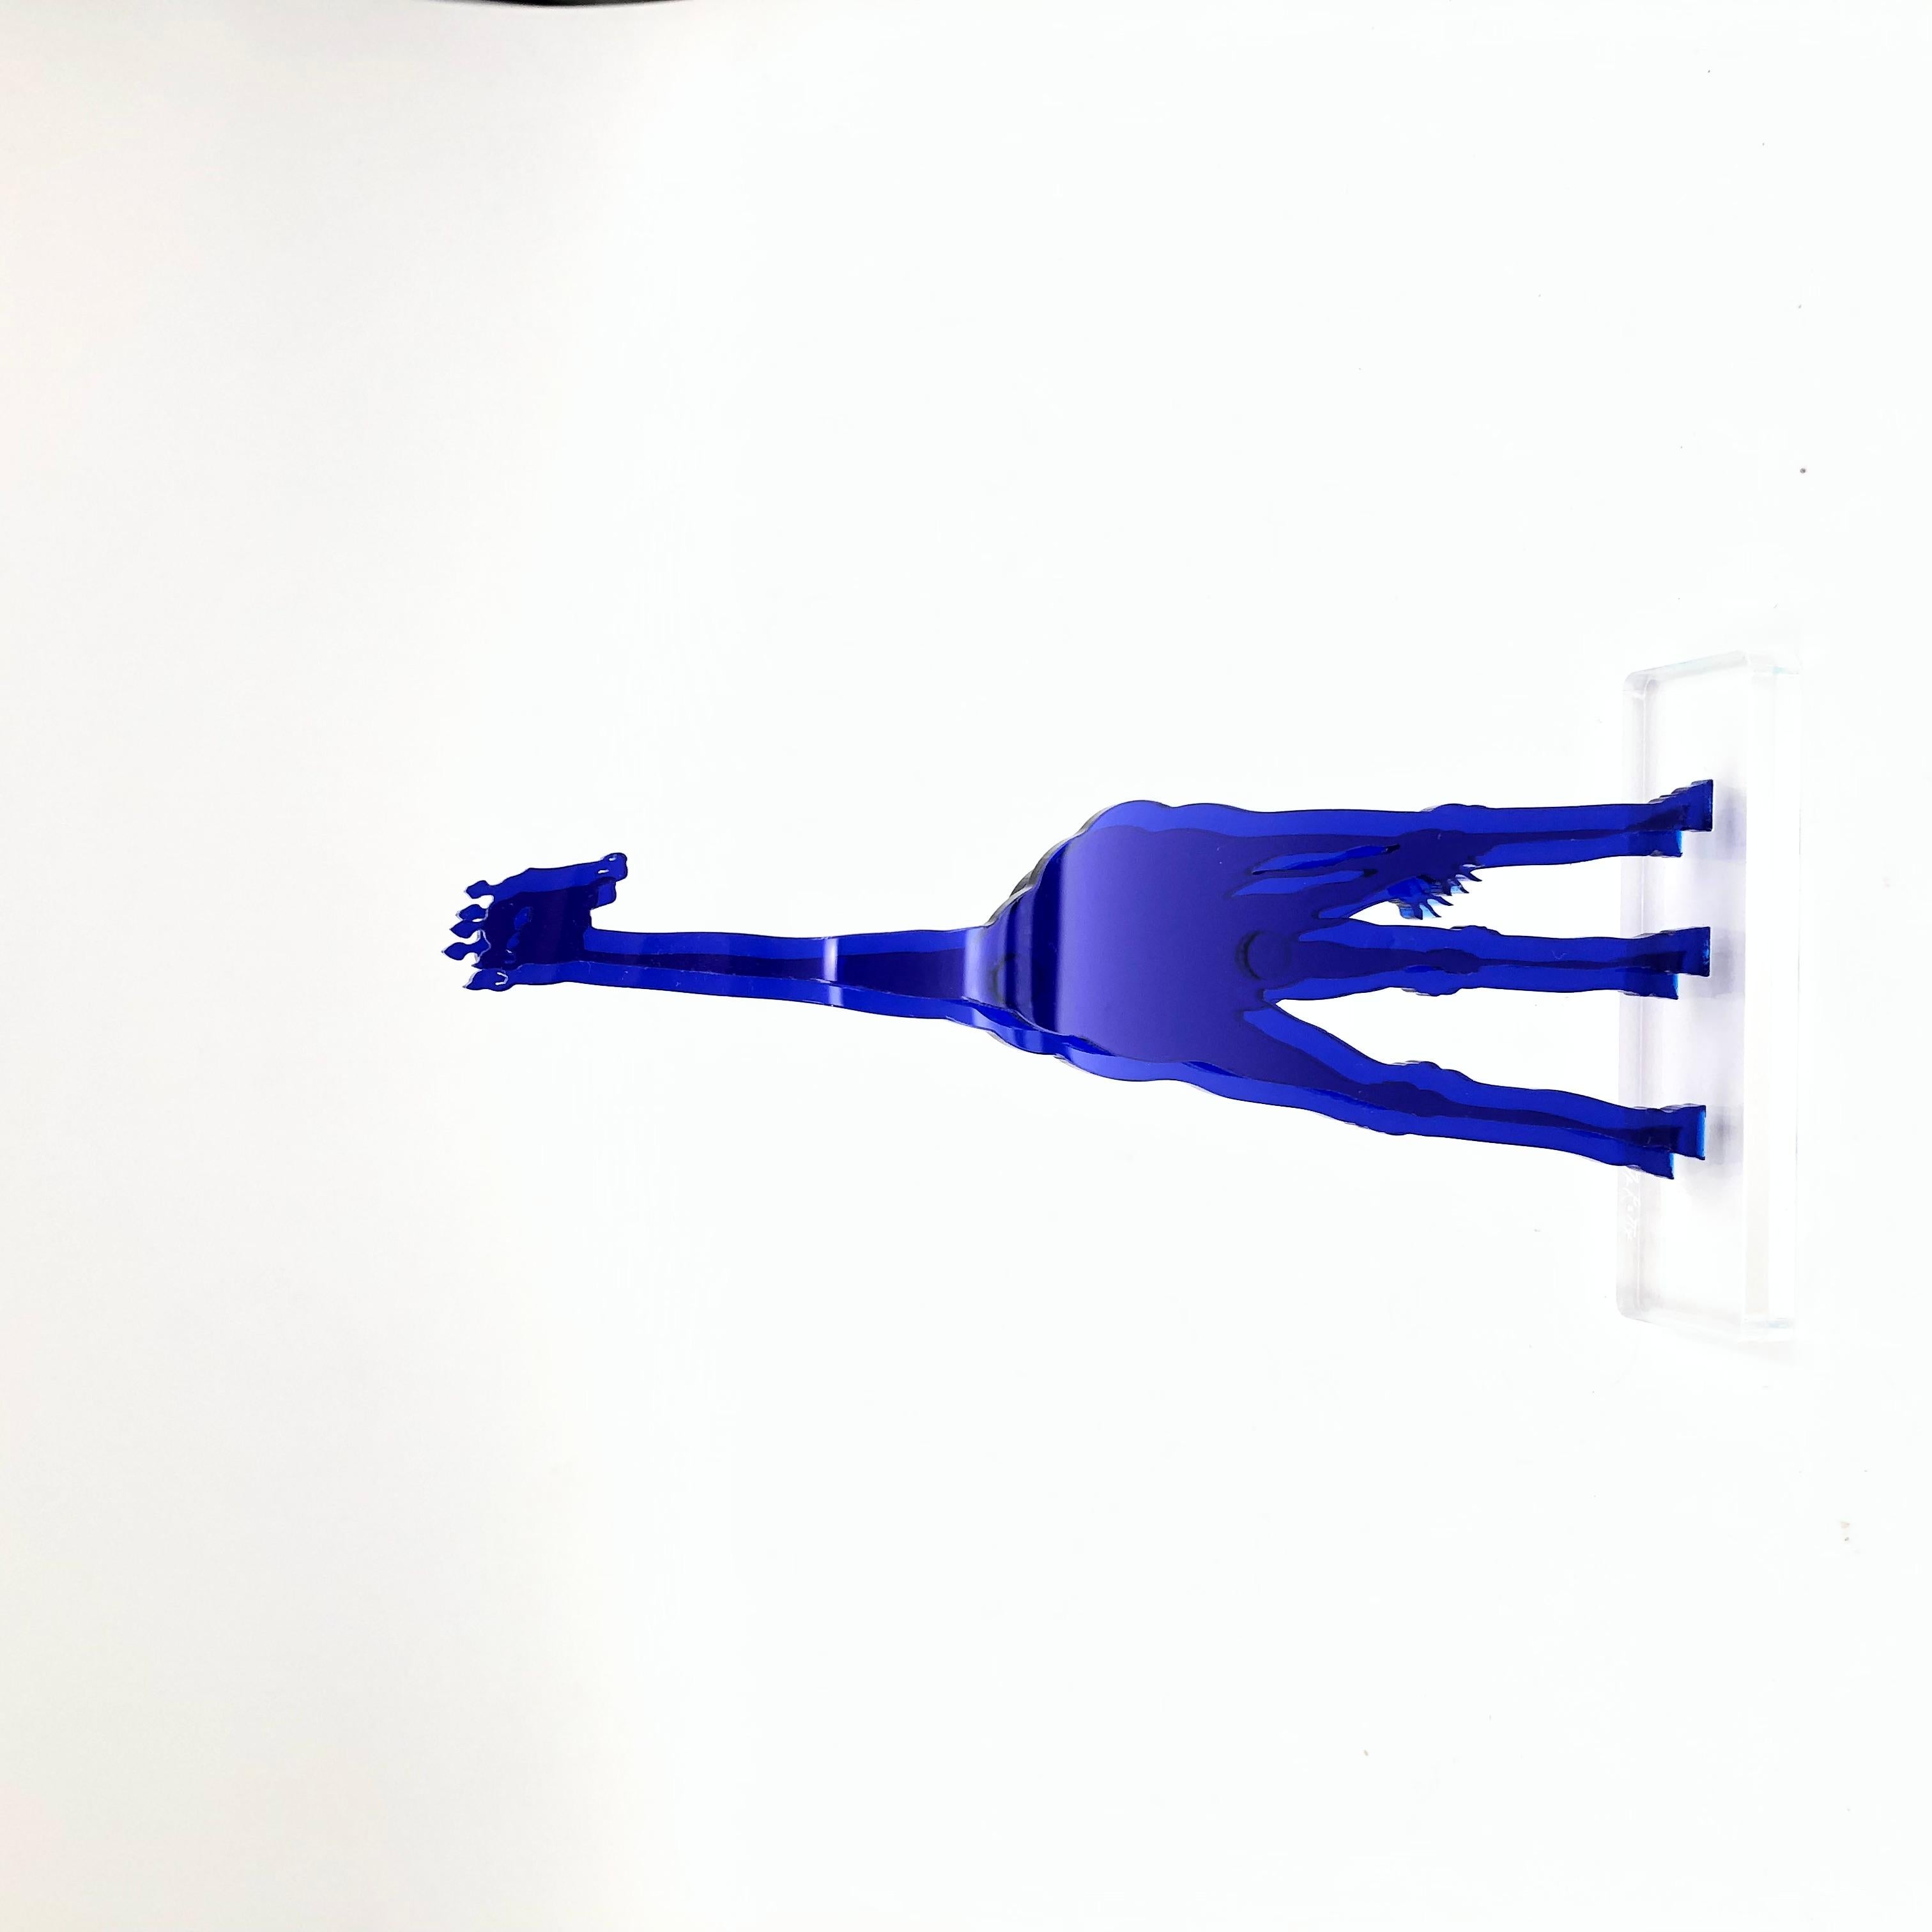 Gino MAROTTA (1935-2012)
Giraffa artificiale, 2010
Edition Artbeat arrêtée
Sculpture, multiple en méthacrylate coloré bleu et découpé. Signé sur la base. 
Haut. : 19 cm Long. : 10 cm

Gino MAROTTA (1935-2012)
Giraffa artificiale, 2010
Edition